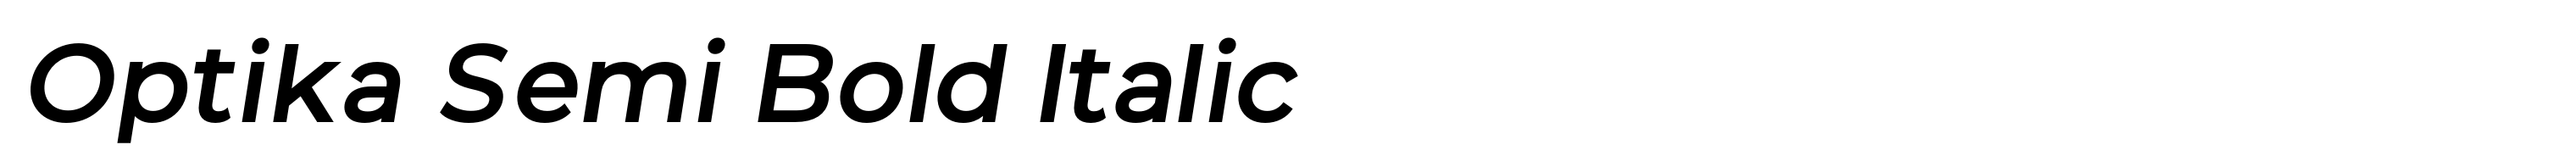 Optika Semi Bold Italic